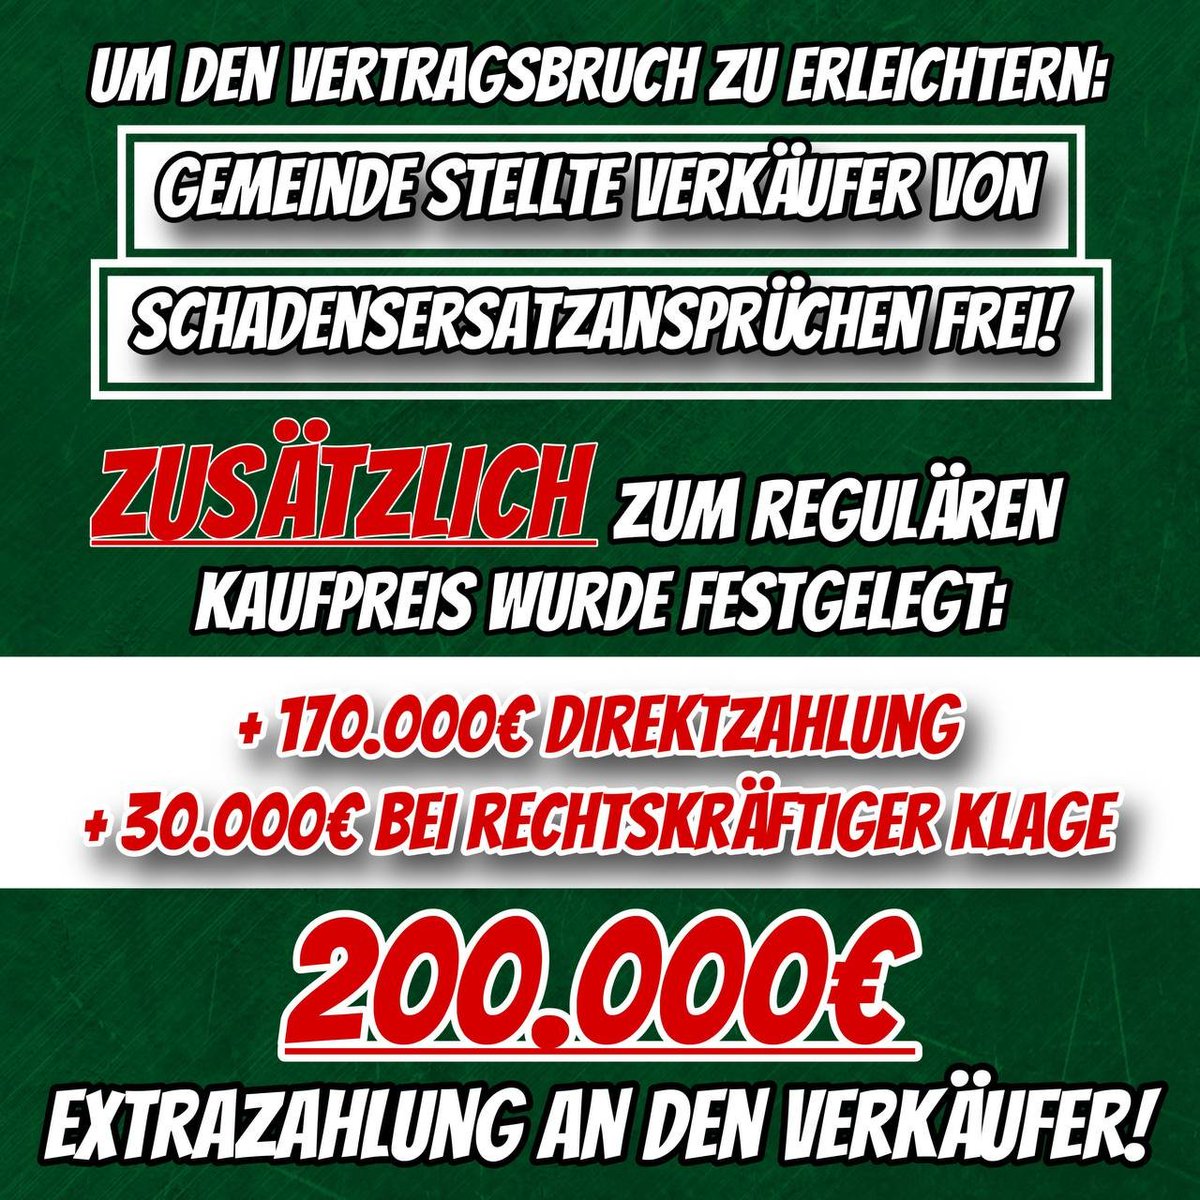 Mit 200.000€ animierte die Gemeinde Hilchenbach den Verkäufer zum Vertragsbruch!
#DerDritteWeg #DerIIIWeg #3Weg #Hilchenbach #NRW #Deutschland